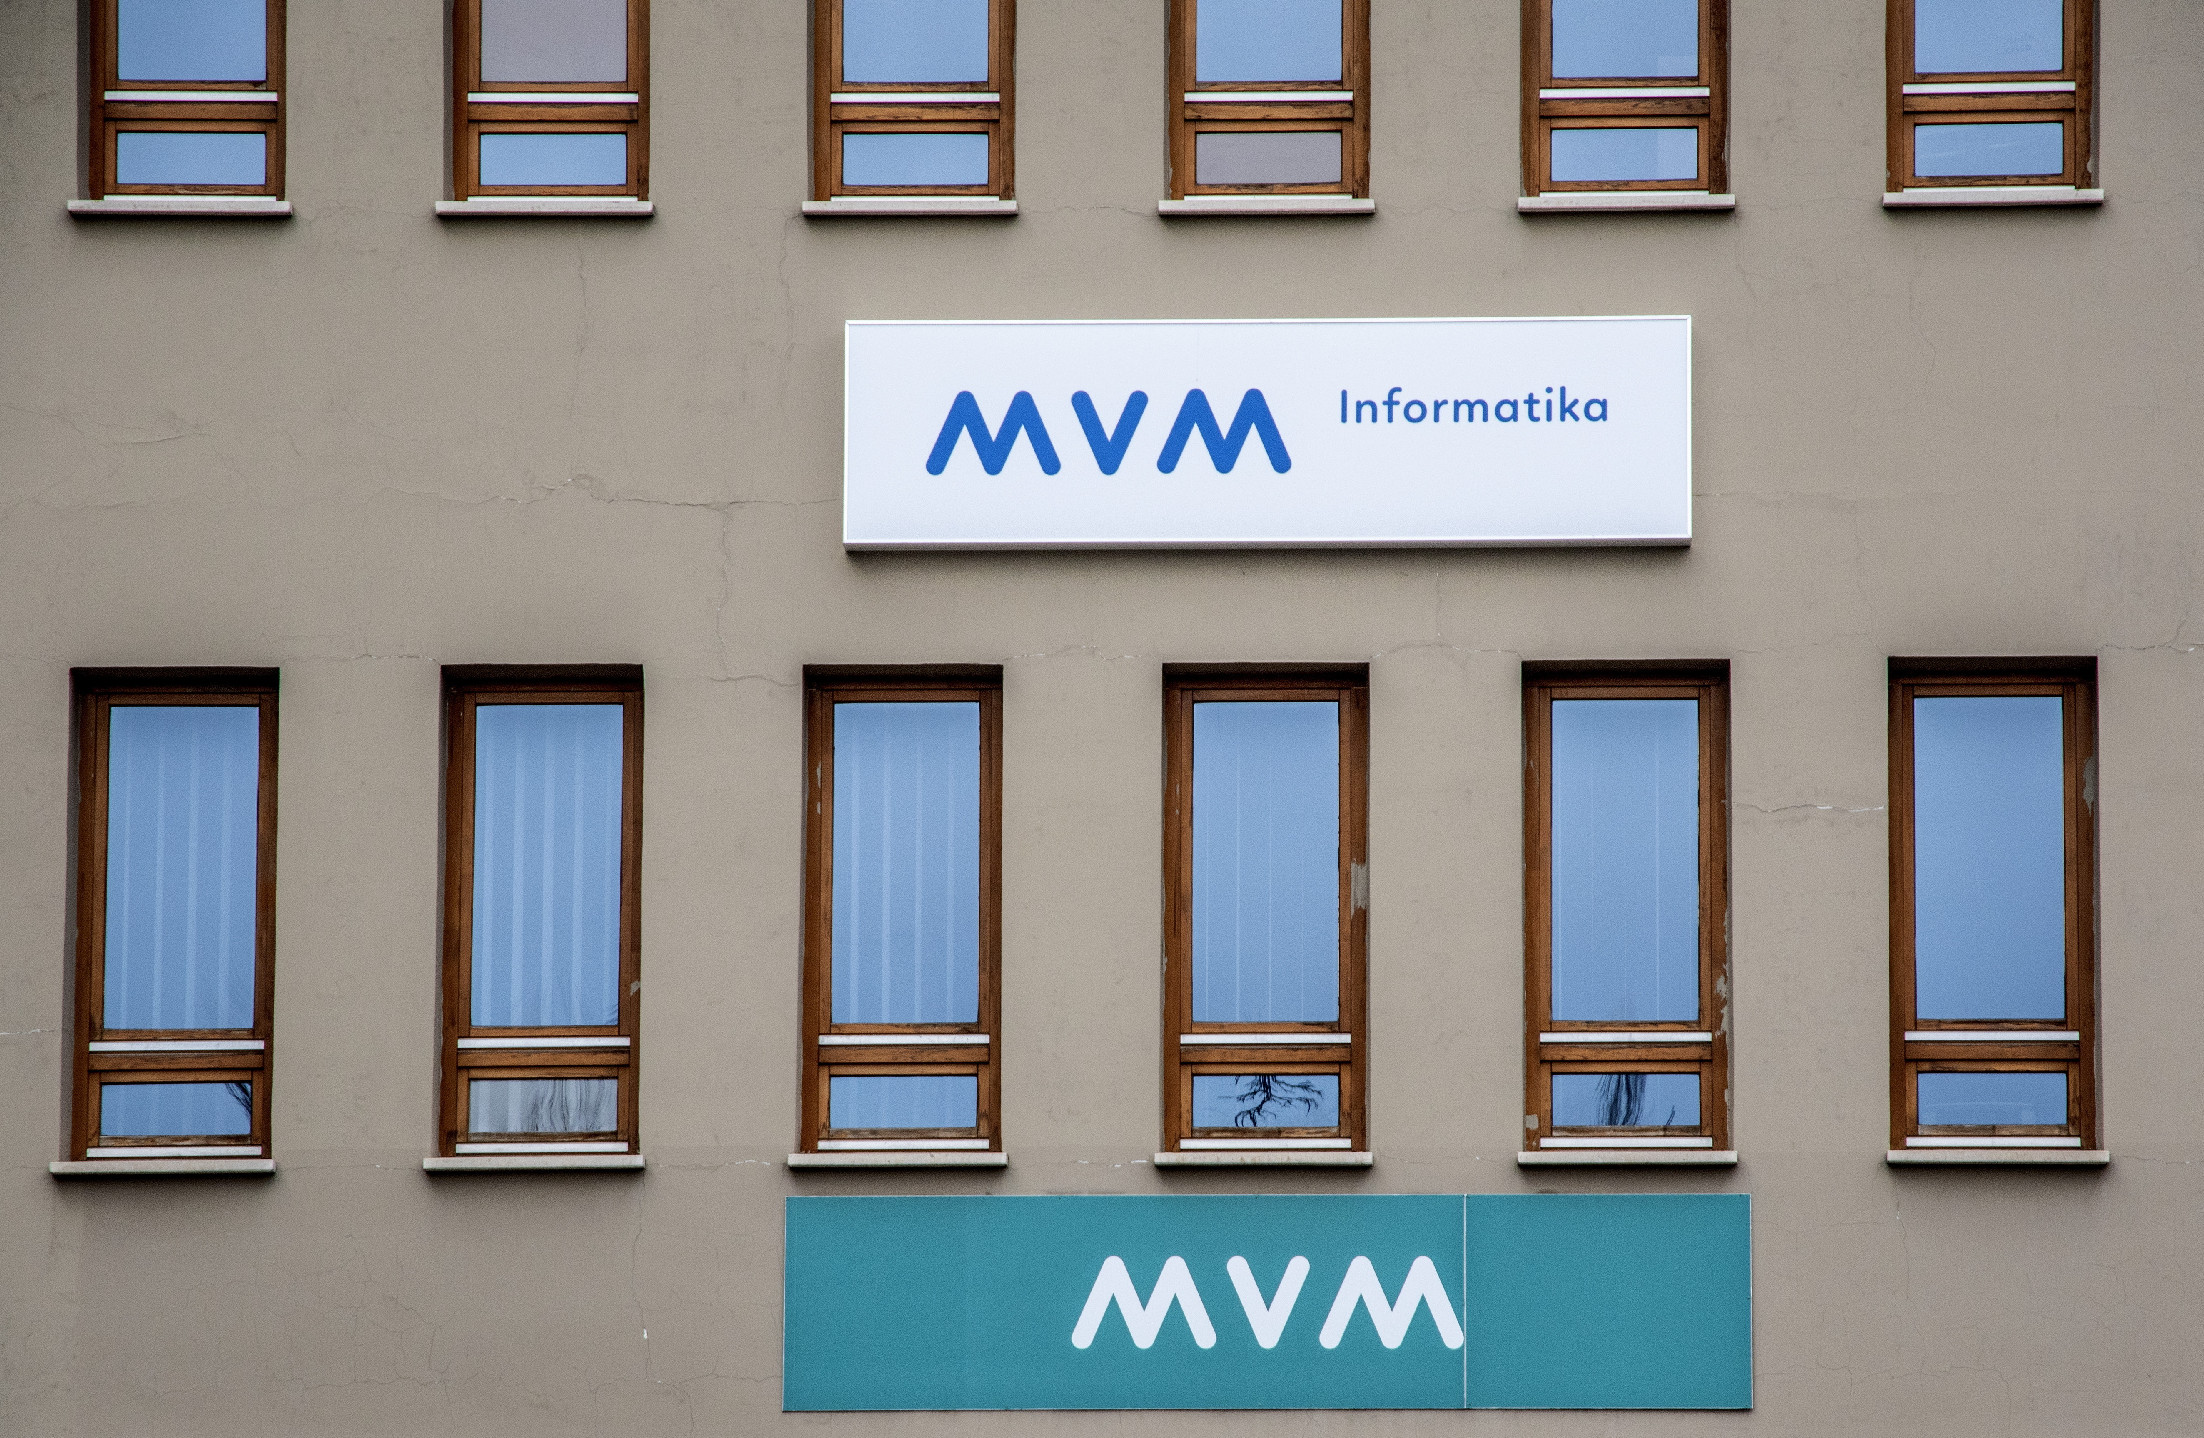 Mostantól az MVM az egyedüli egyetemes energiaszolgáltató Magyarországon